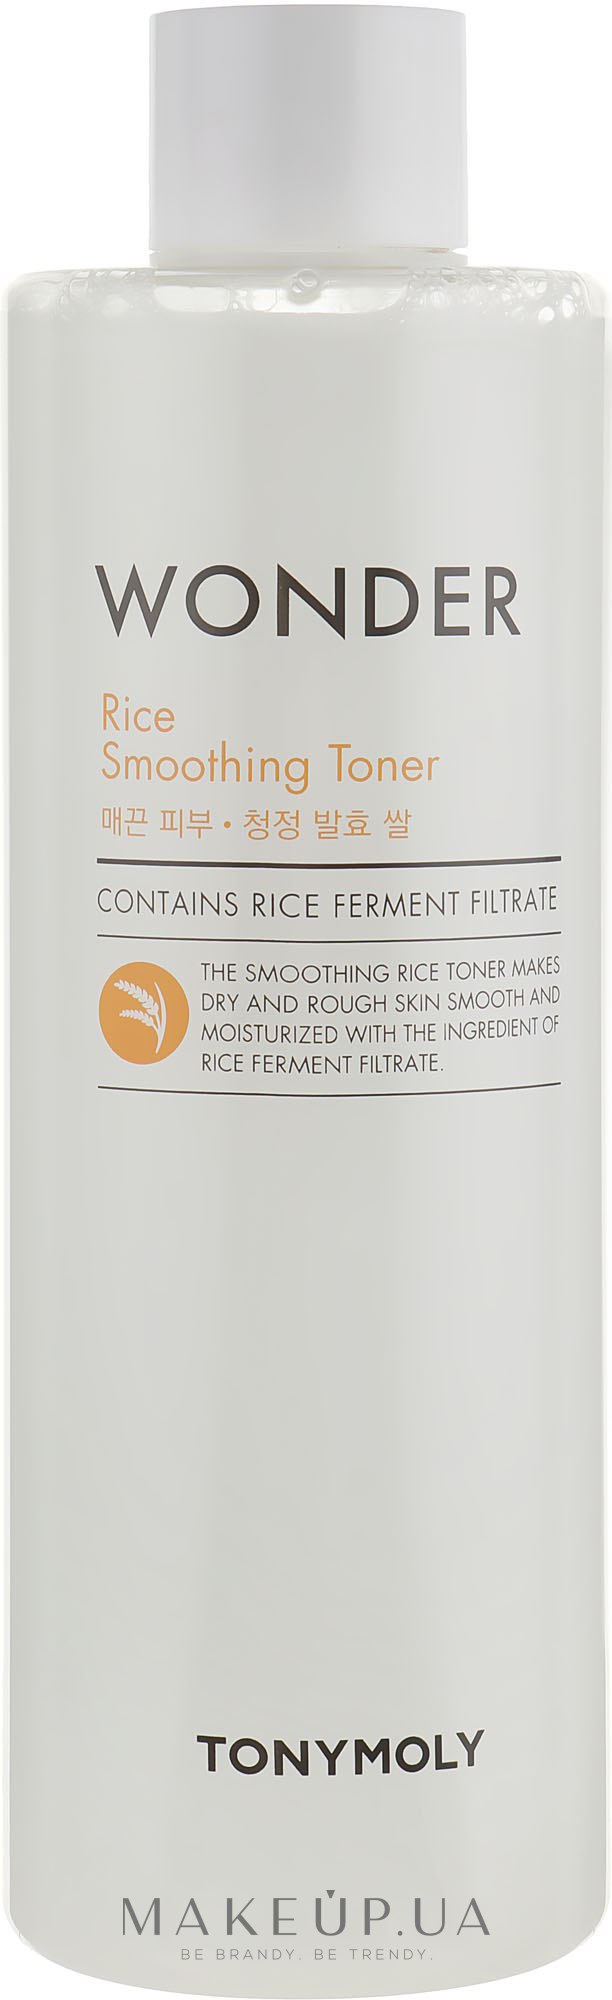 Тоник для лица с рисовым экстрактом - Tony Moly Wonder Rice Smoothing Toner — фото 500ml